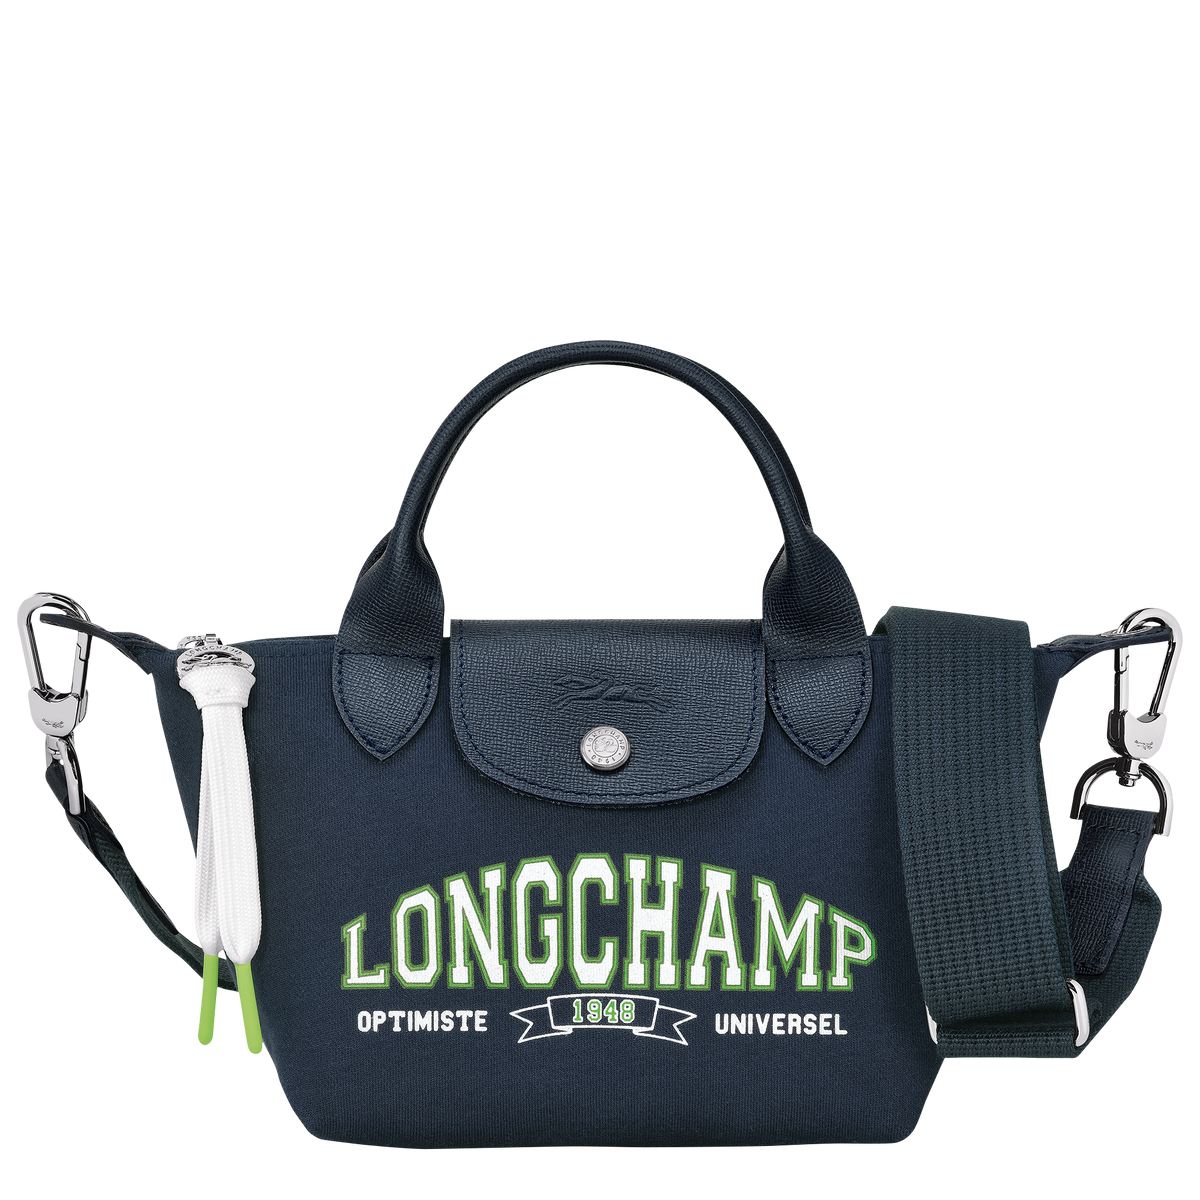 Longchamp Le Pliage Collection Extra Small Handbag Navy- Women